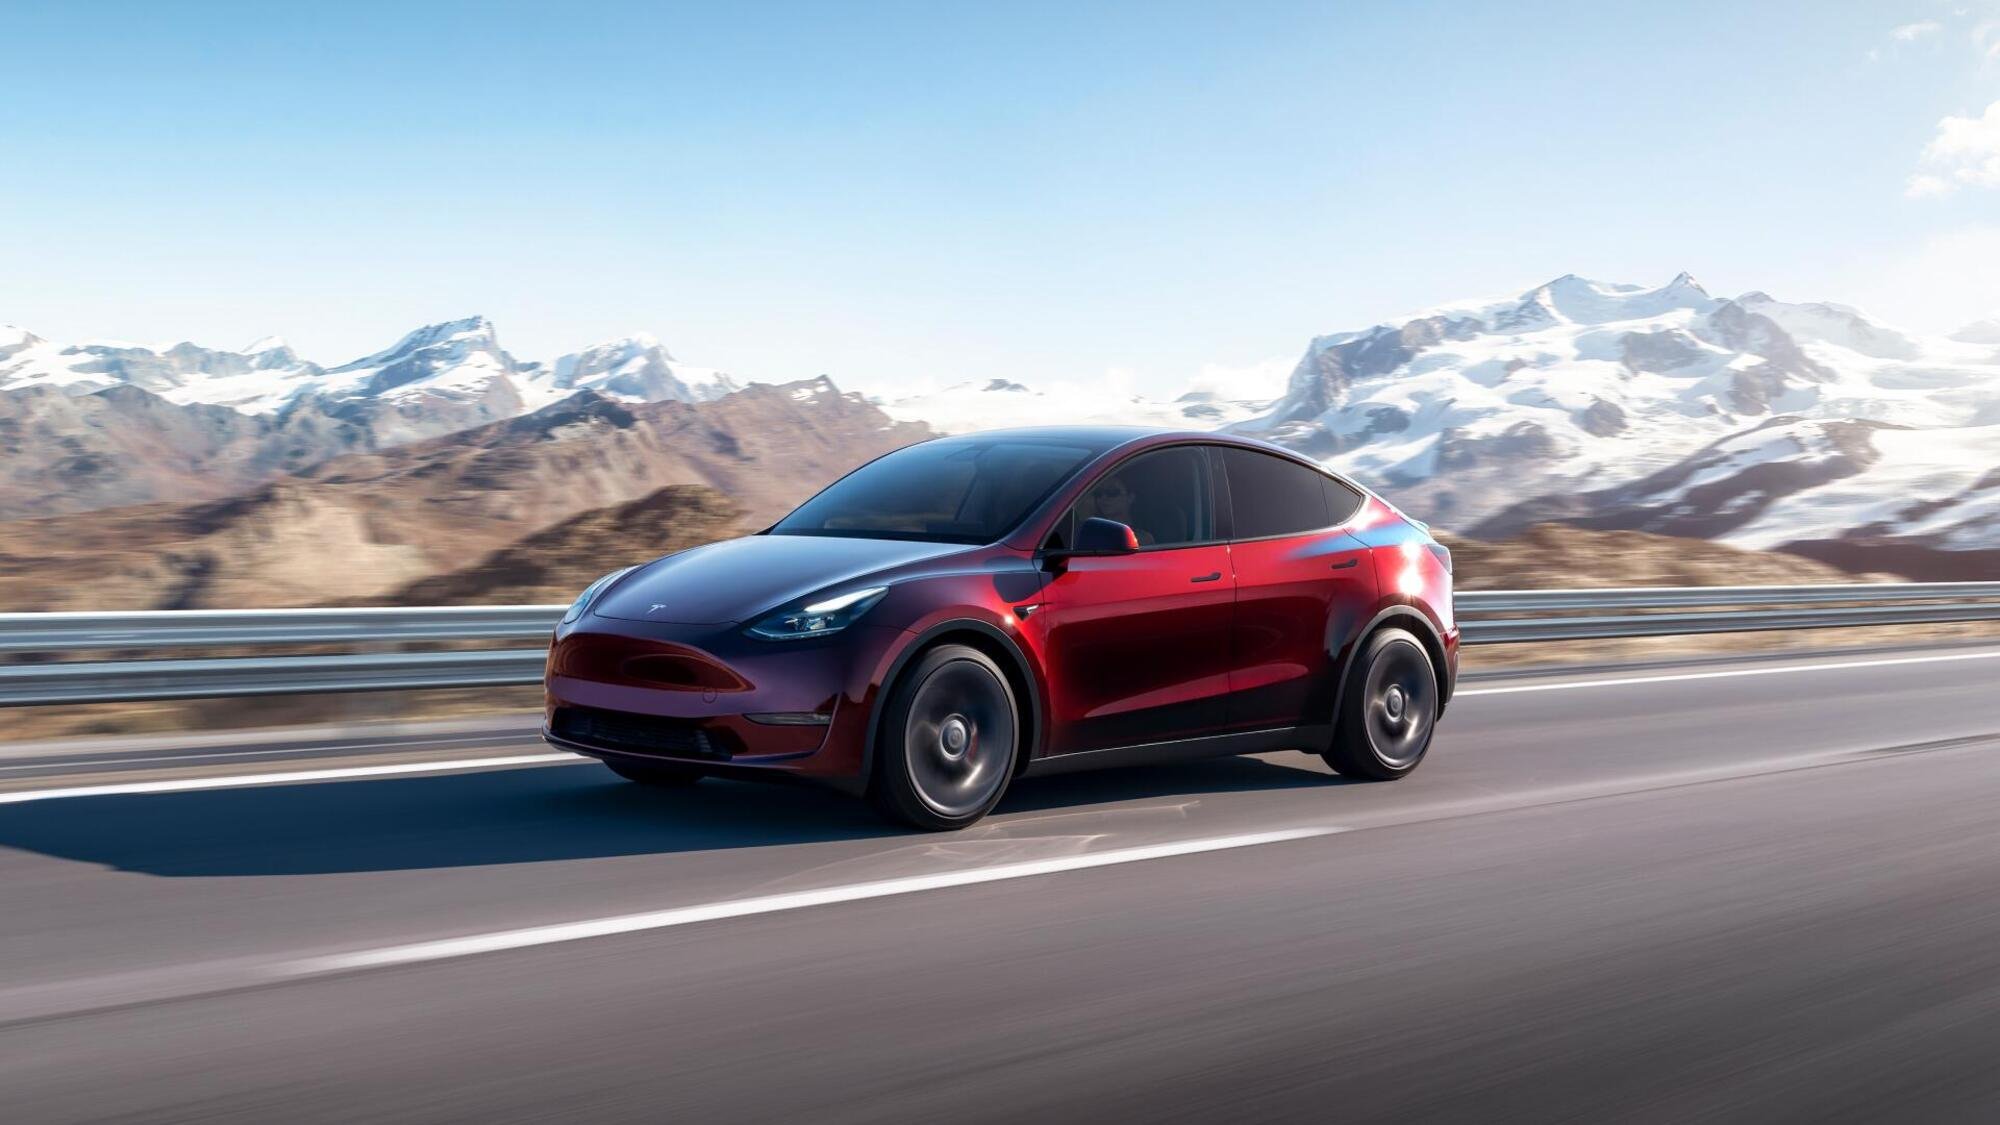 Tutti i colori di Tesla: puoi averla rosso ciliegia o mercurio liquido [VIDEO]